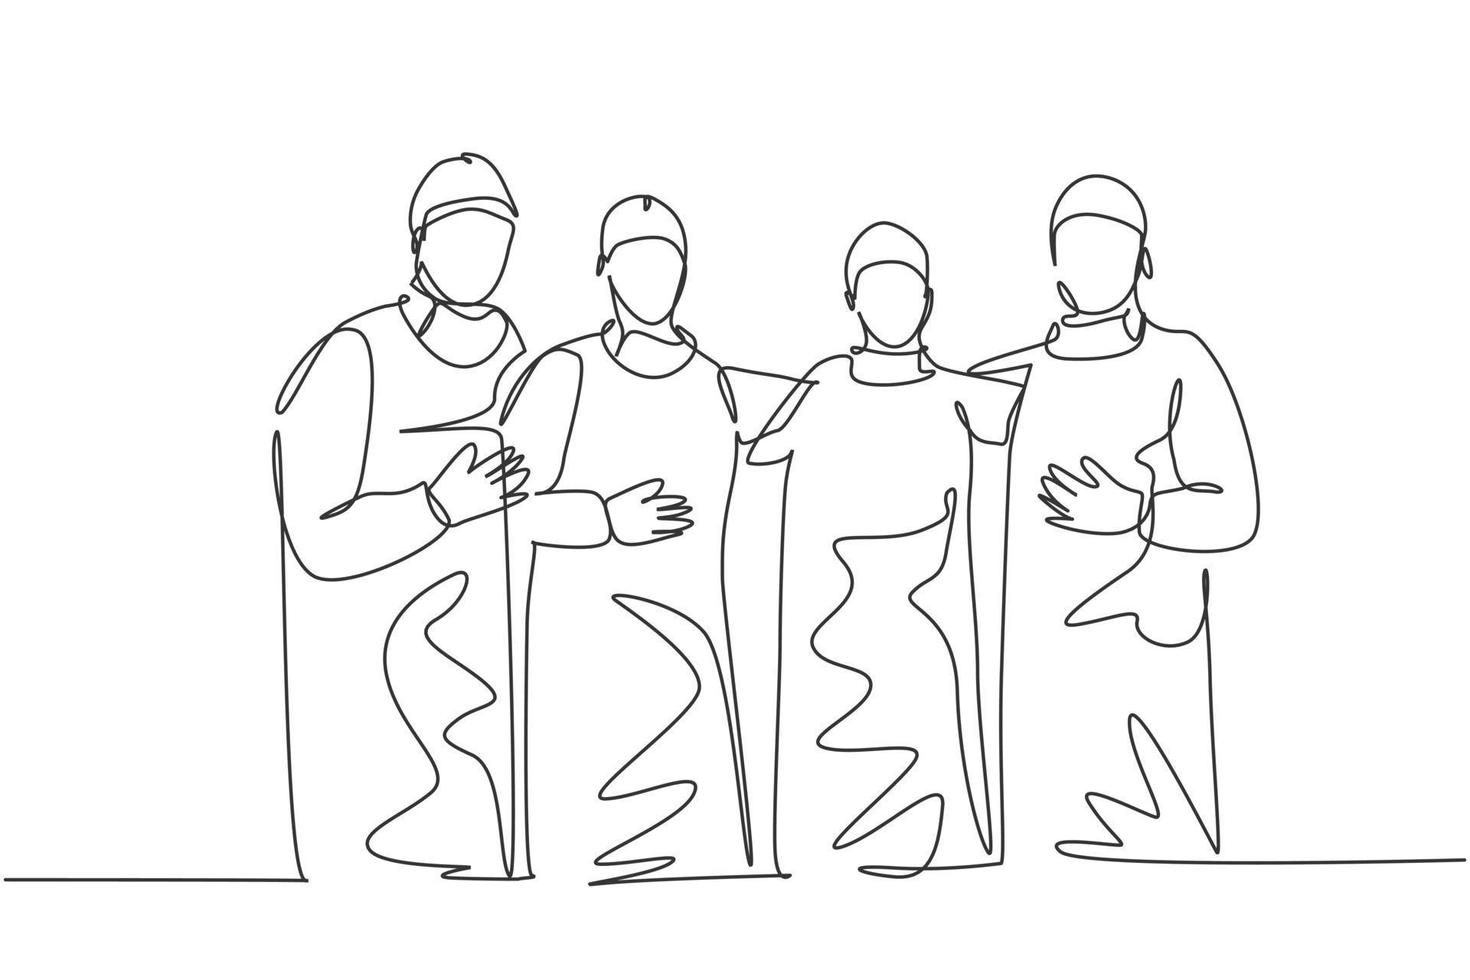 enda kontinuerlig enkel linje ritning grupp av kirurgläkare som står och poserar efter att ha opererat kirurgi på sjukhus. medicinsk vård behandling koncept en linje rita design vektor illustration